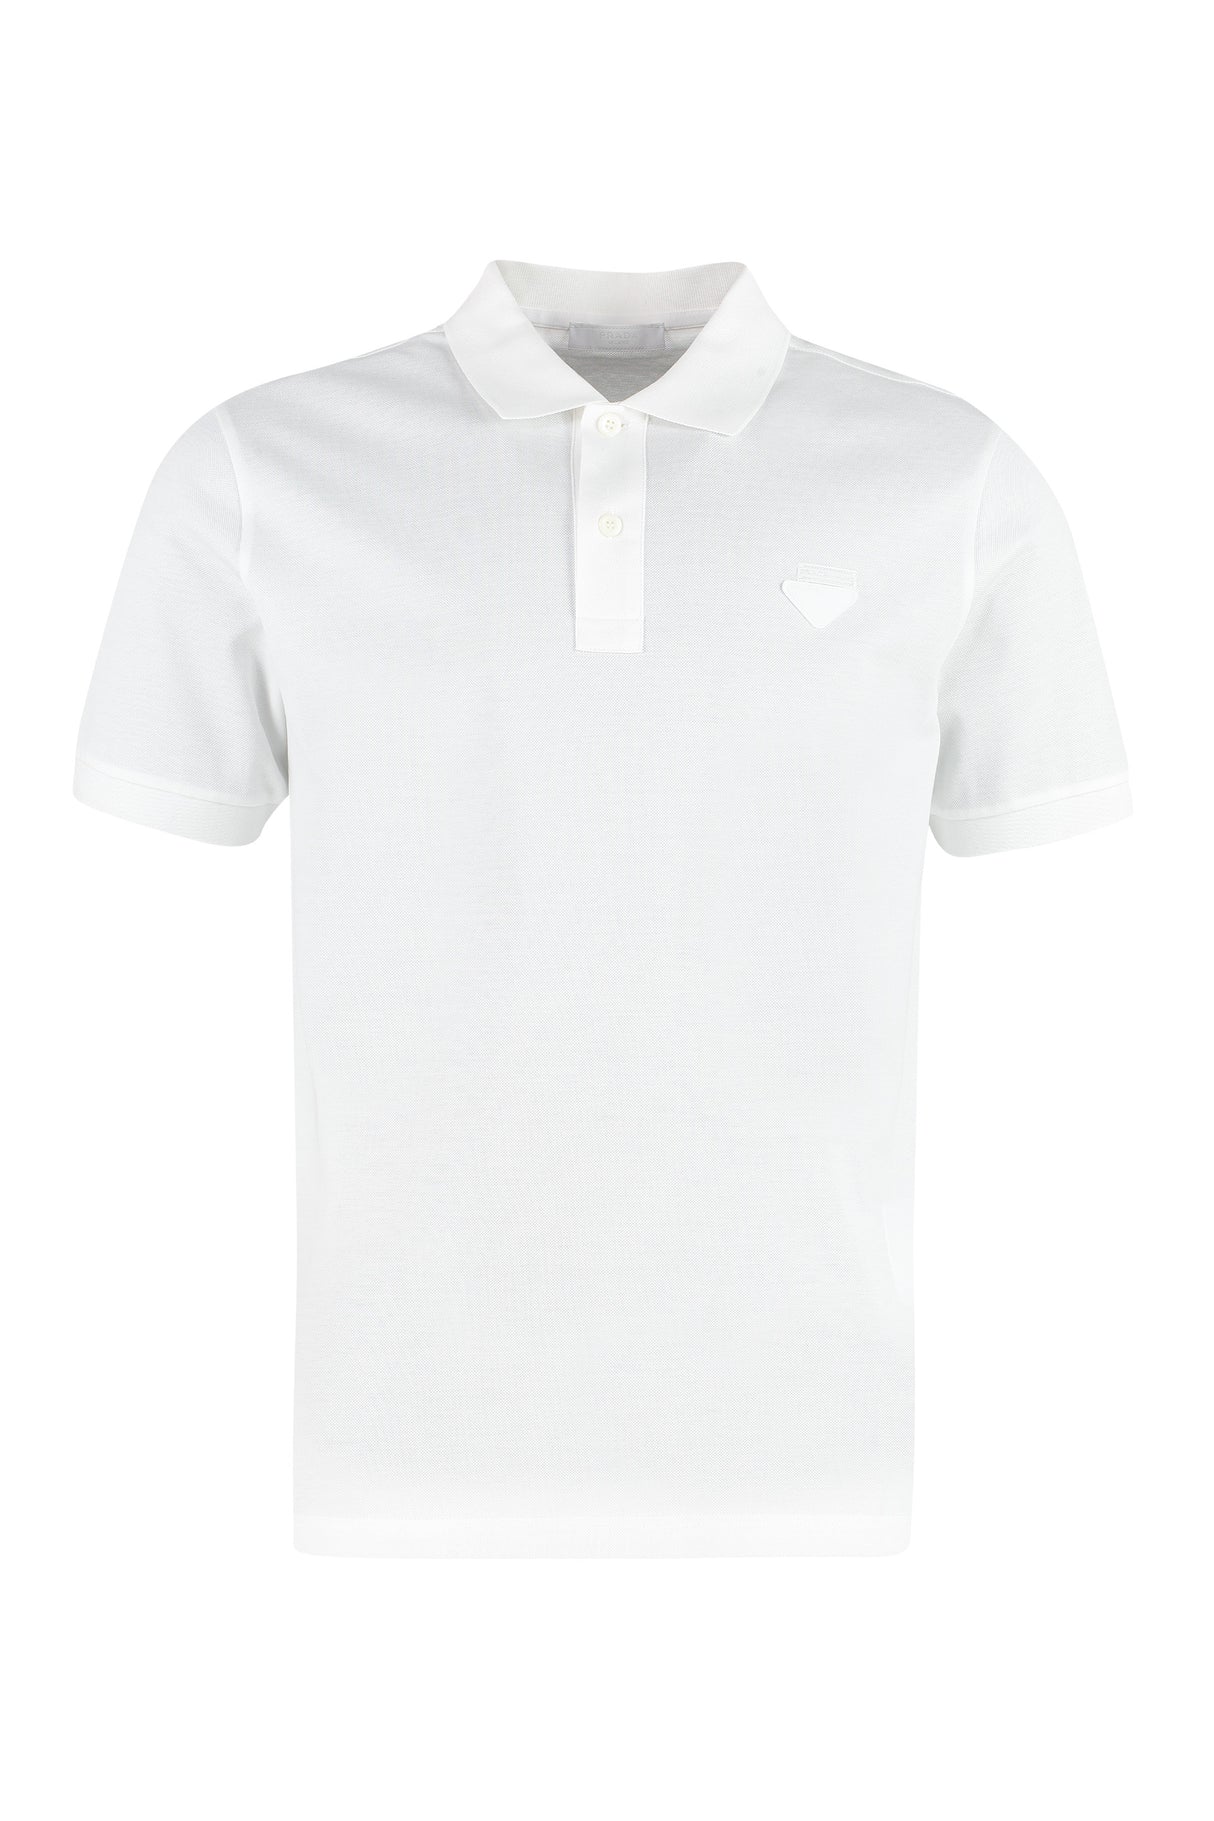 PRADA Classic Cotton Piqué Polo Shirt for Men in White